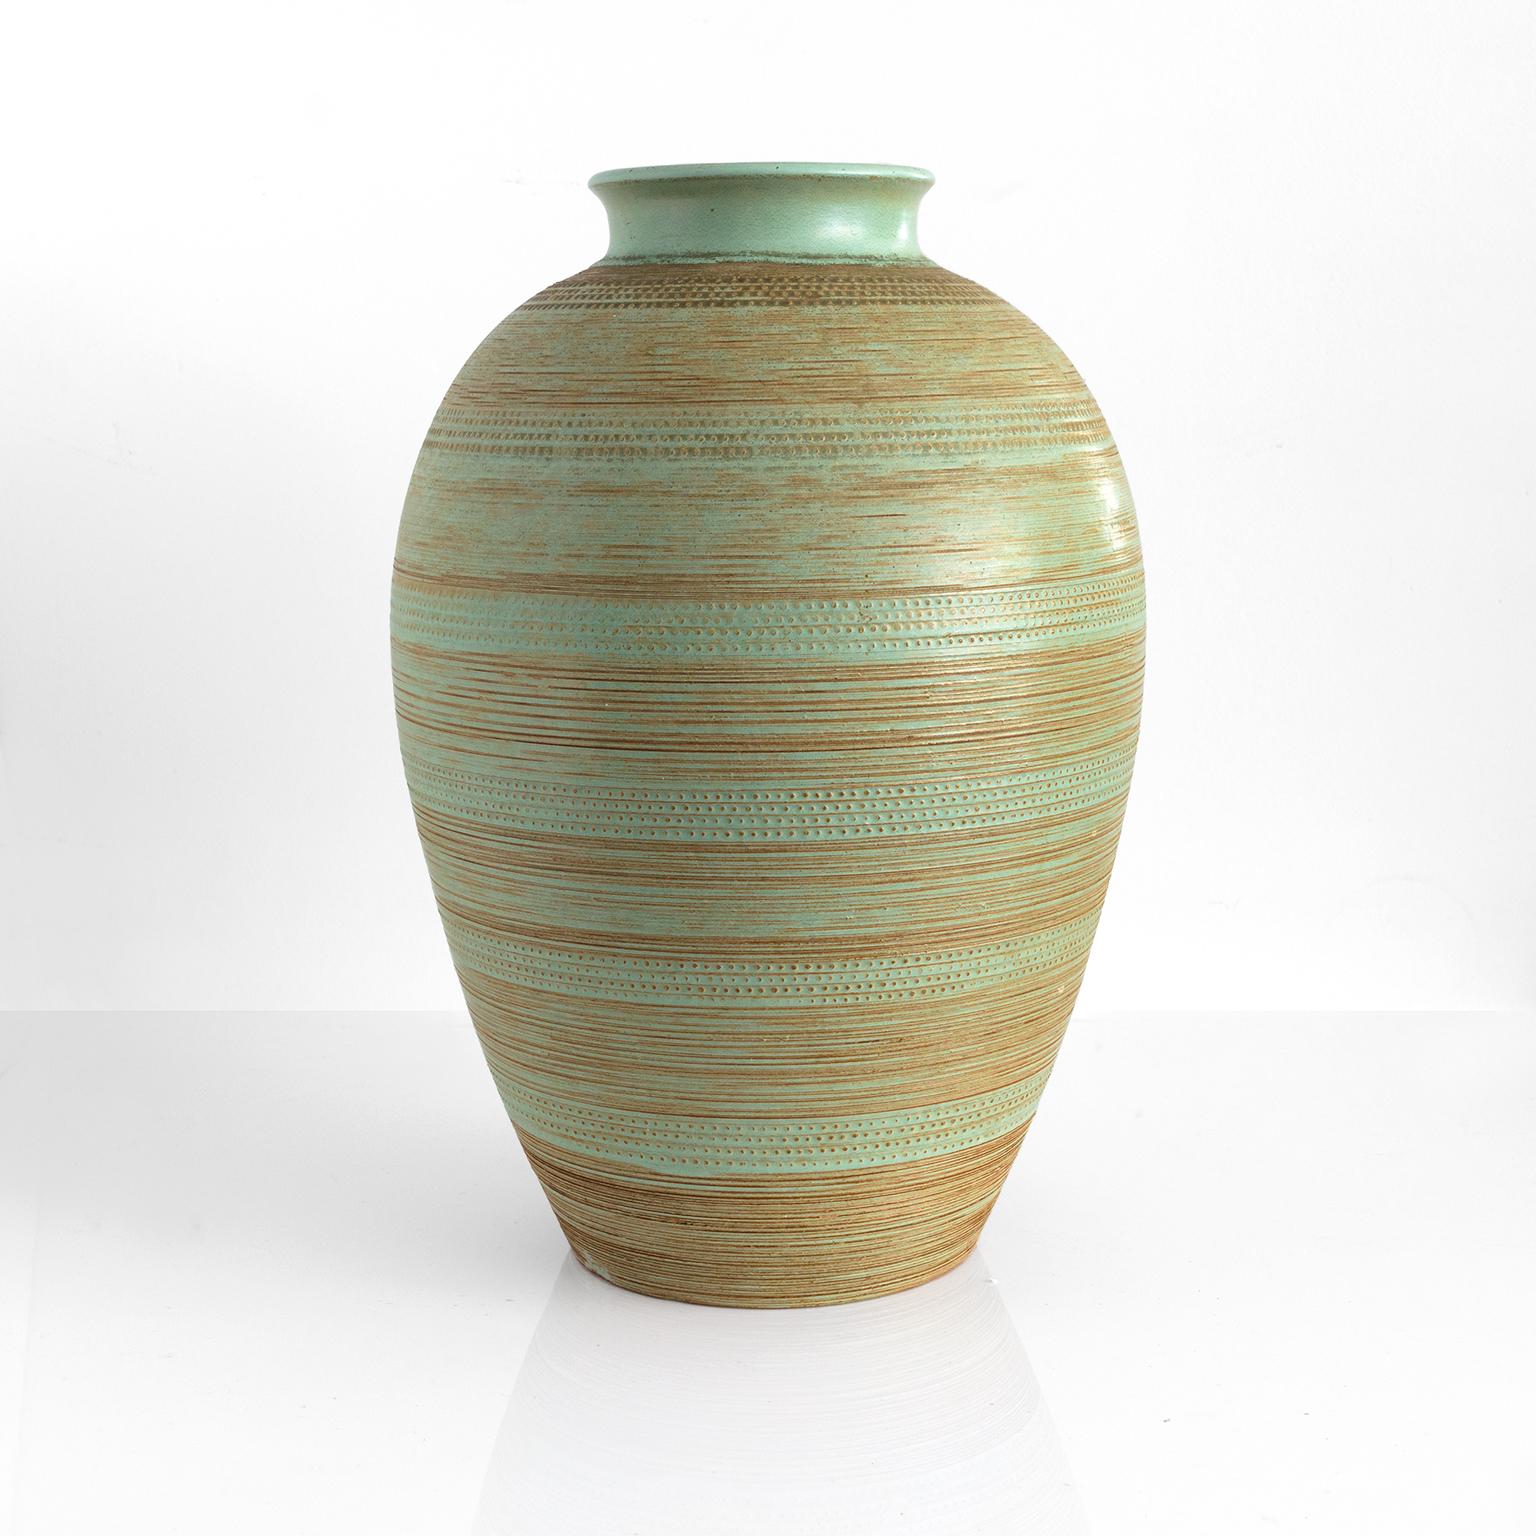 Grand vase moderne scandinave en céramique texturée à la main avec une glaçure vert clair sur un corps en argile brun. Fabriqué par Andersson & Johansson, Höganäs, Suède, vers 1950

Mesures : Hauteur : 17